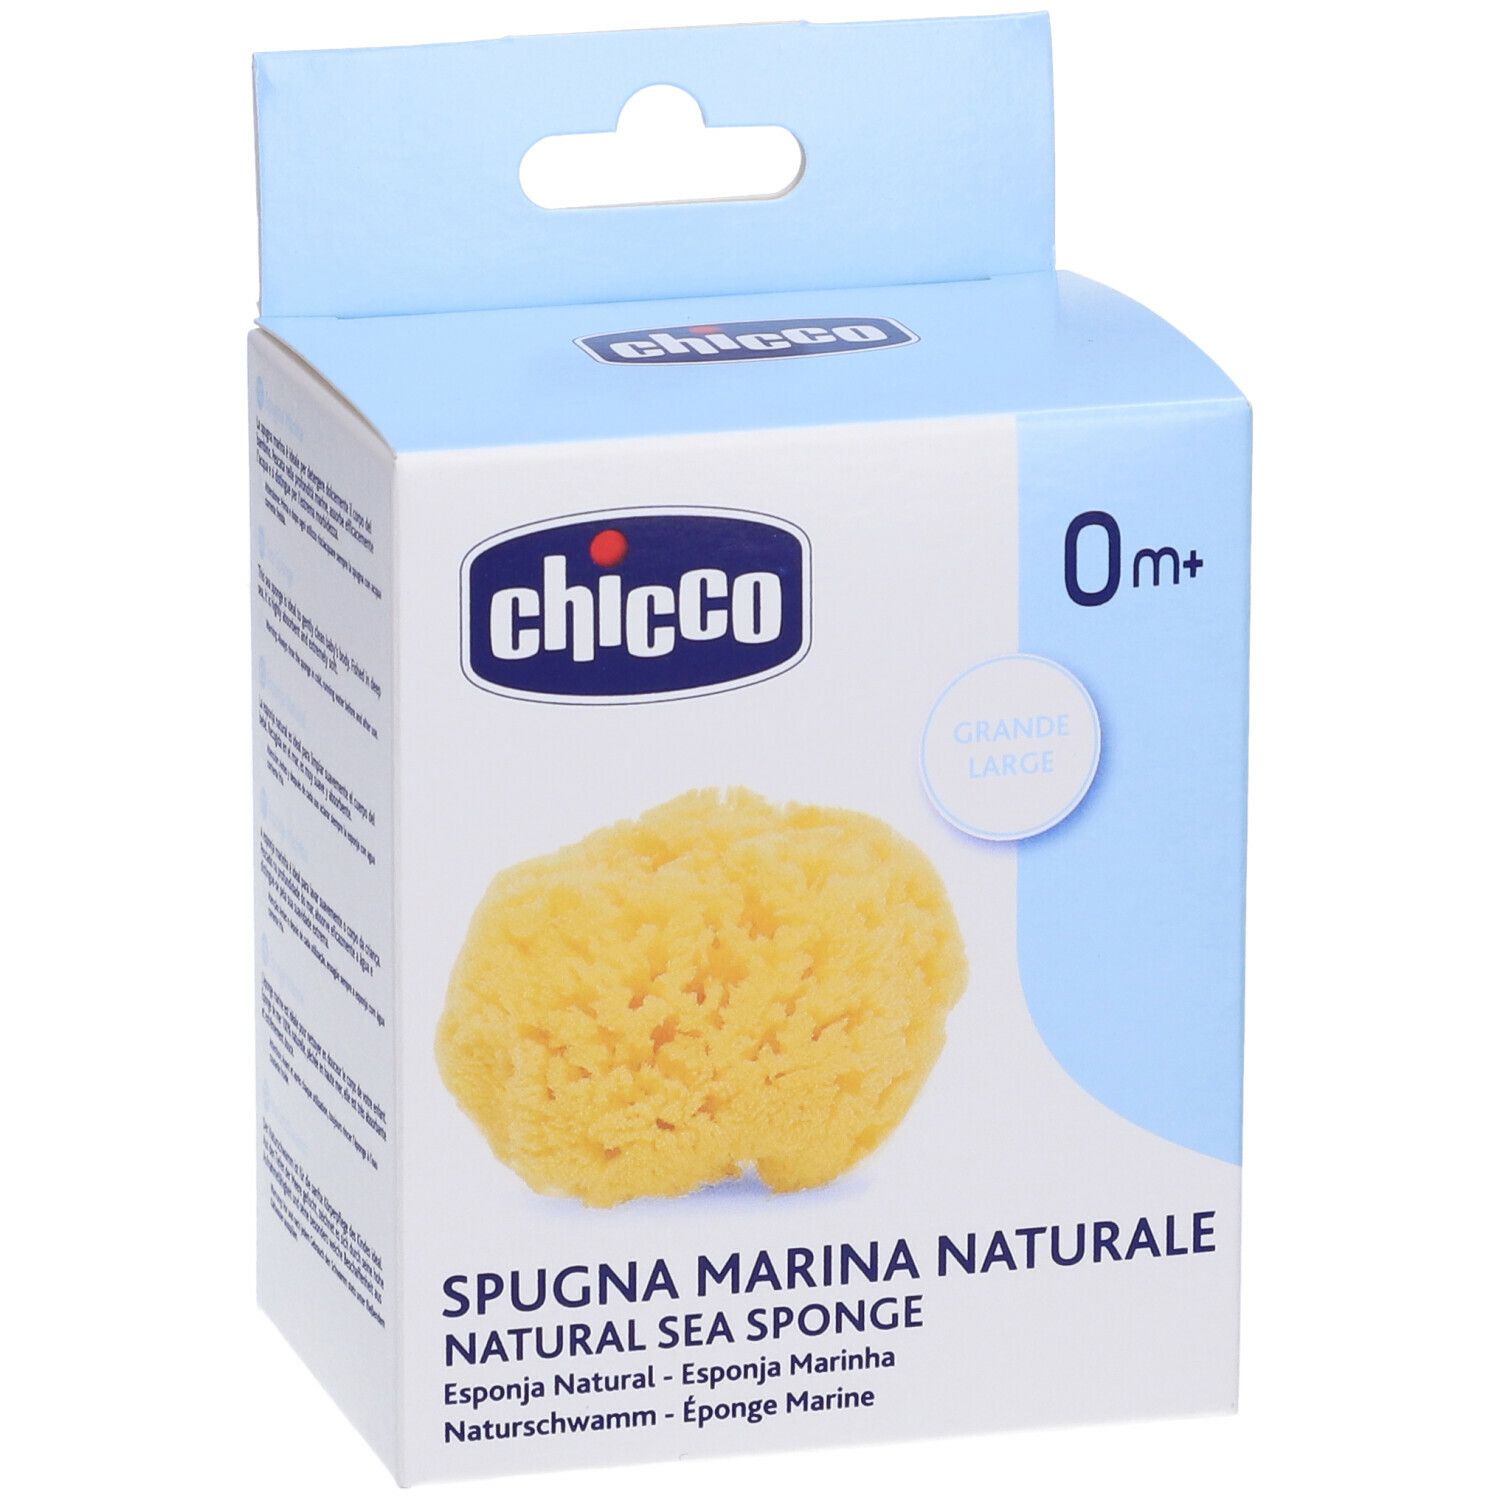 Chicco Spugna Marina Naturale Grande 0 m+ 1 pz